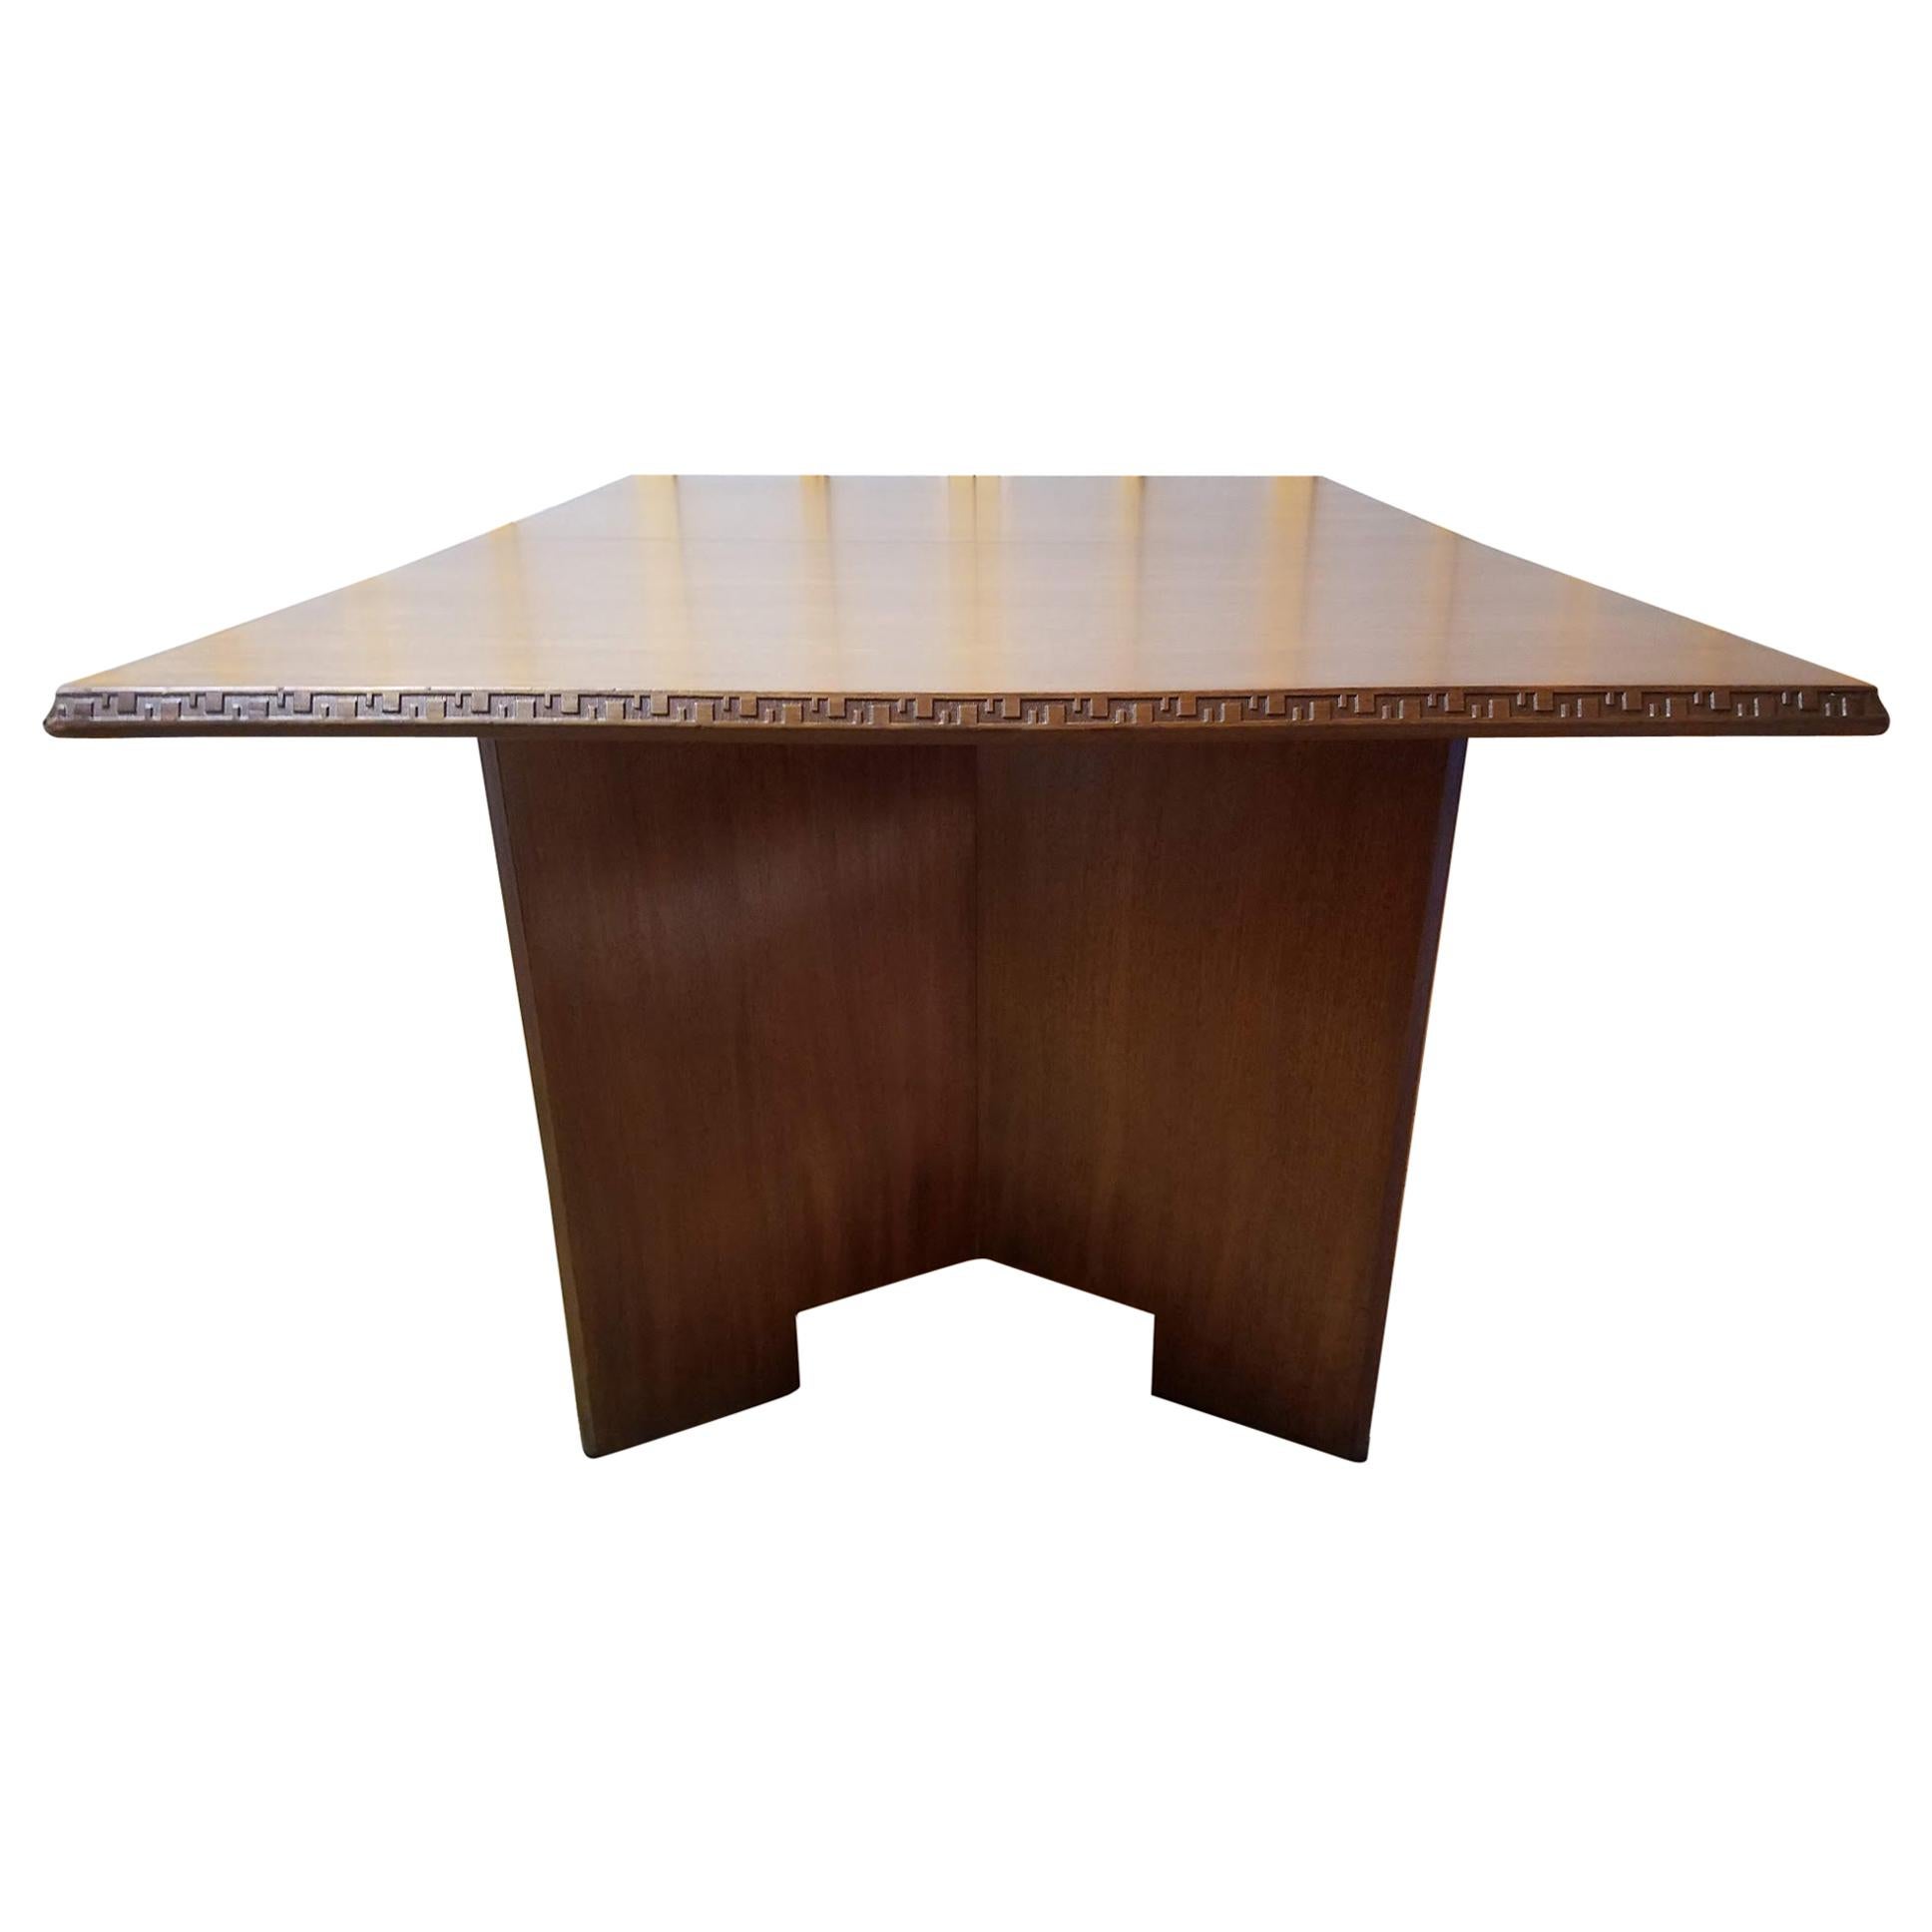 Frank Lloyd Wright Mahogany Dining Table Heritage Henredon Model 2002, 1955